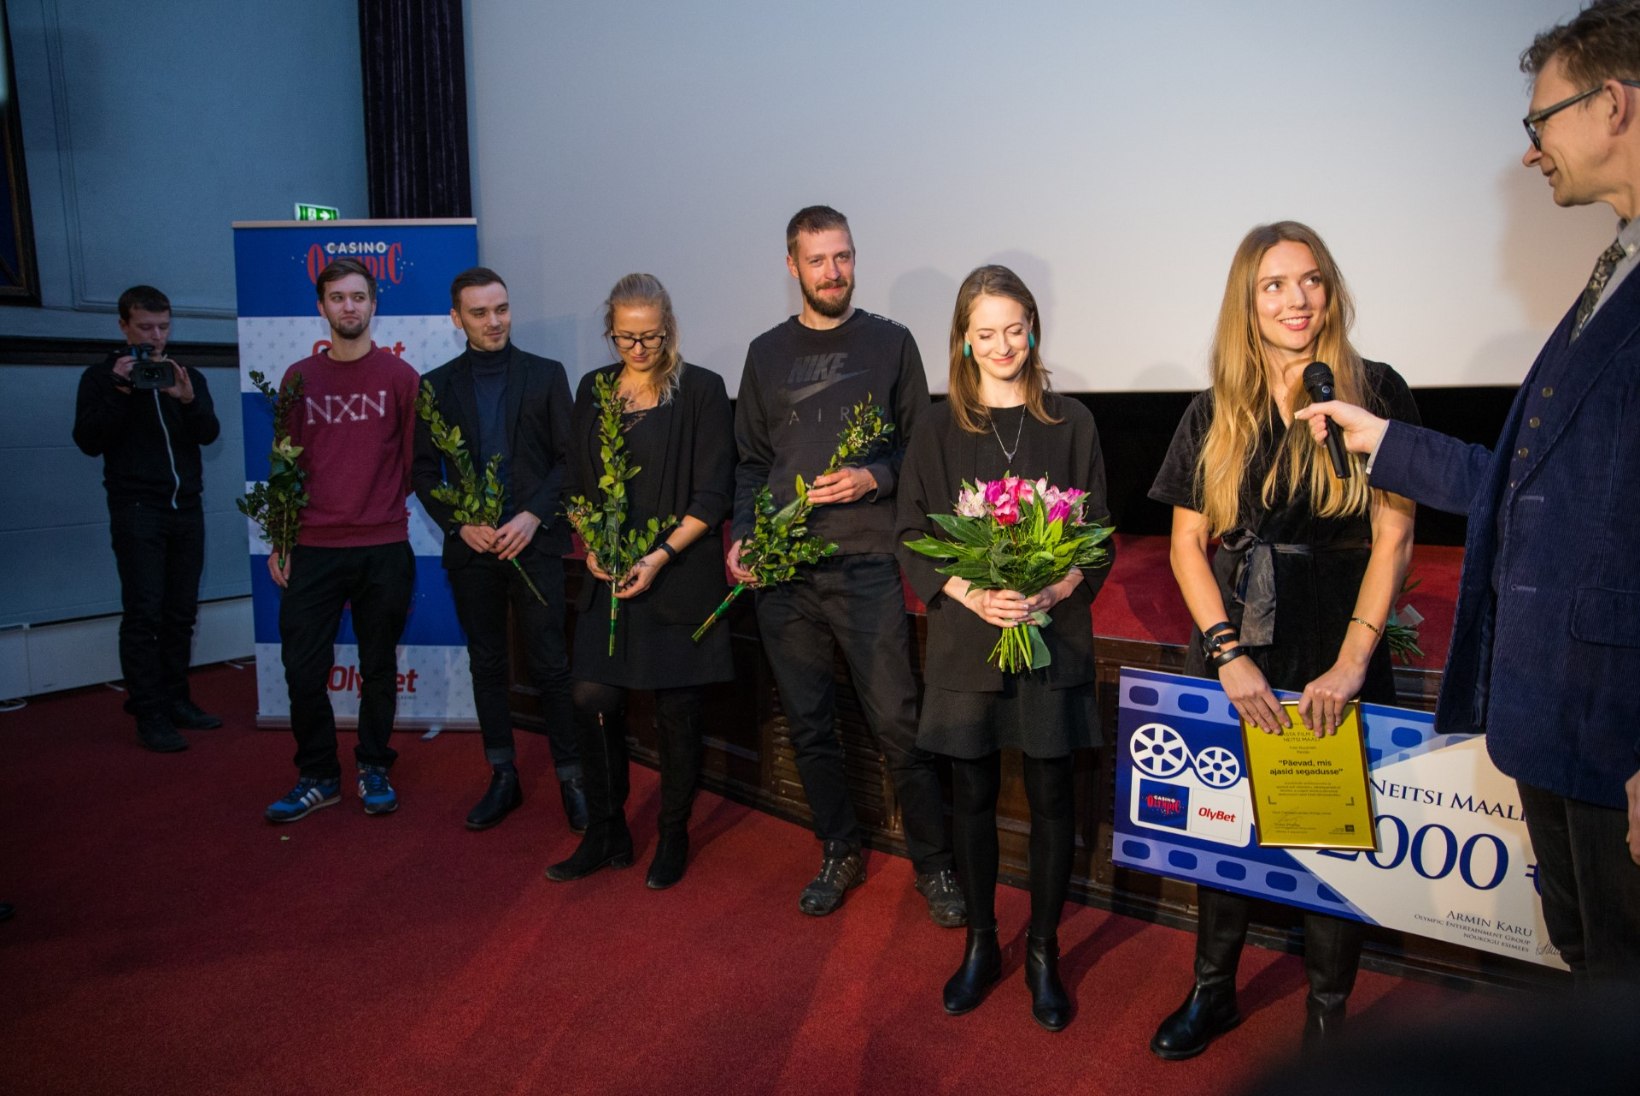 GALERII | "Päevad, mis ajasid segadusse" valiti 2016. aasta parimaks Eesti filmiks